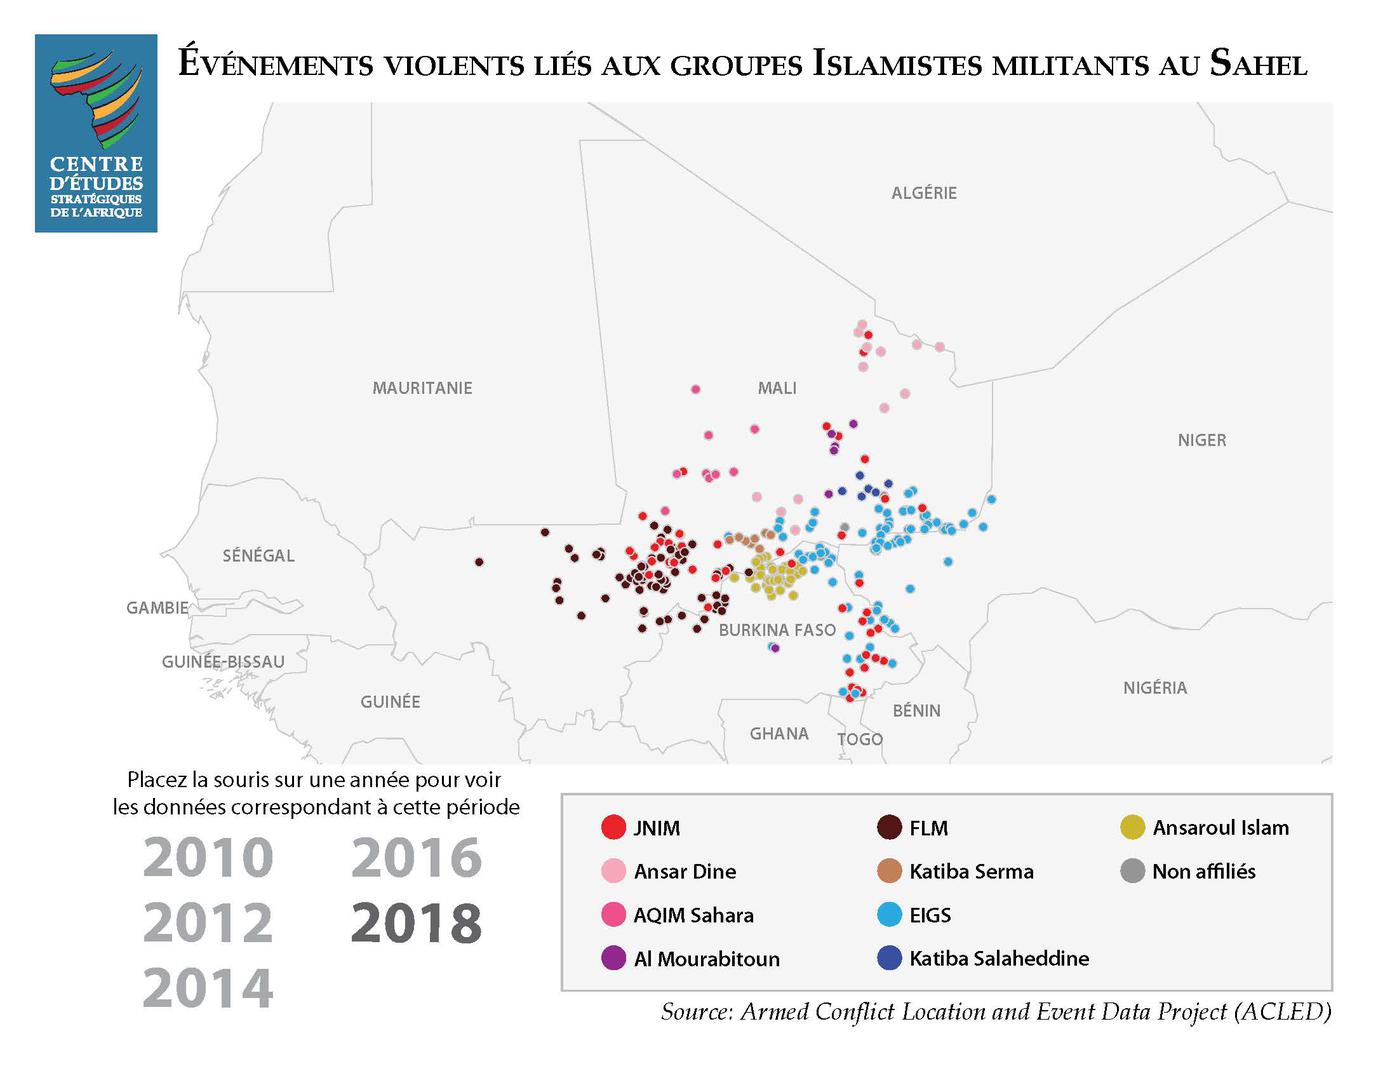 La violence au Sahel a considérablement augmenté entre 2016 et 2018, en raison de l'intensification des activités et de la présence de groupes islamistes armés.